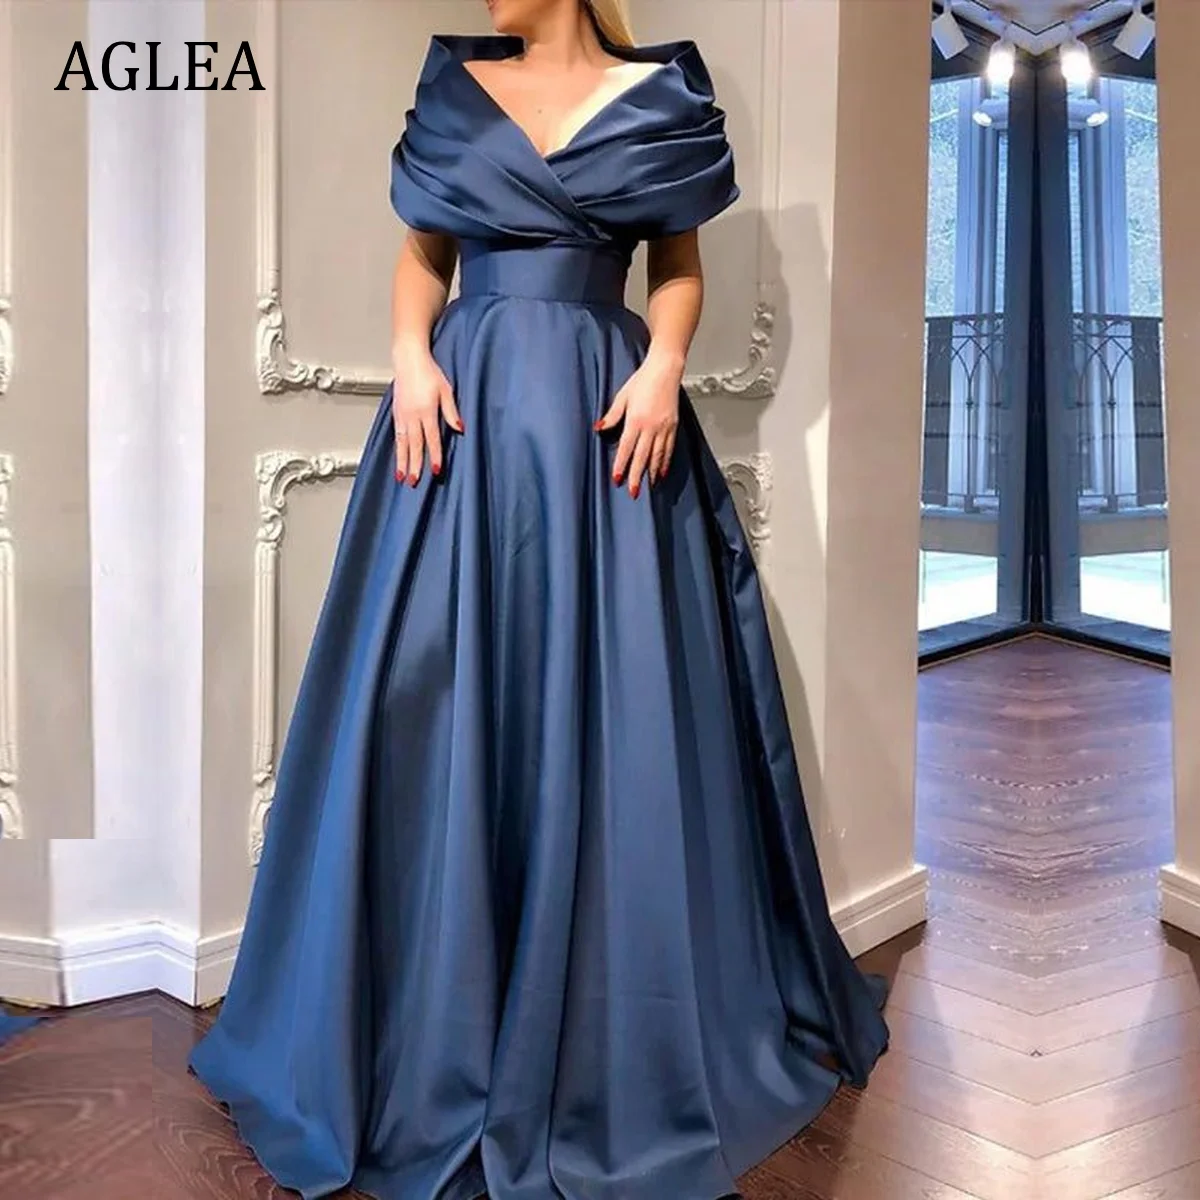 

Женское вечернее платье с оборками AGLEA, элегантное строгое платье со шлейфом и открытыми плечами, трапециевидного силуэта, для выпускного вечера